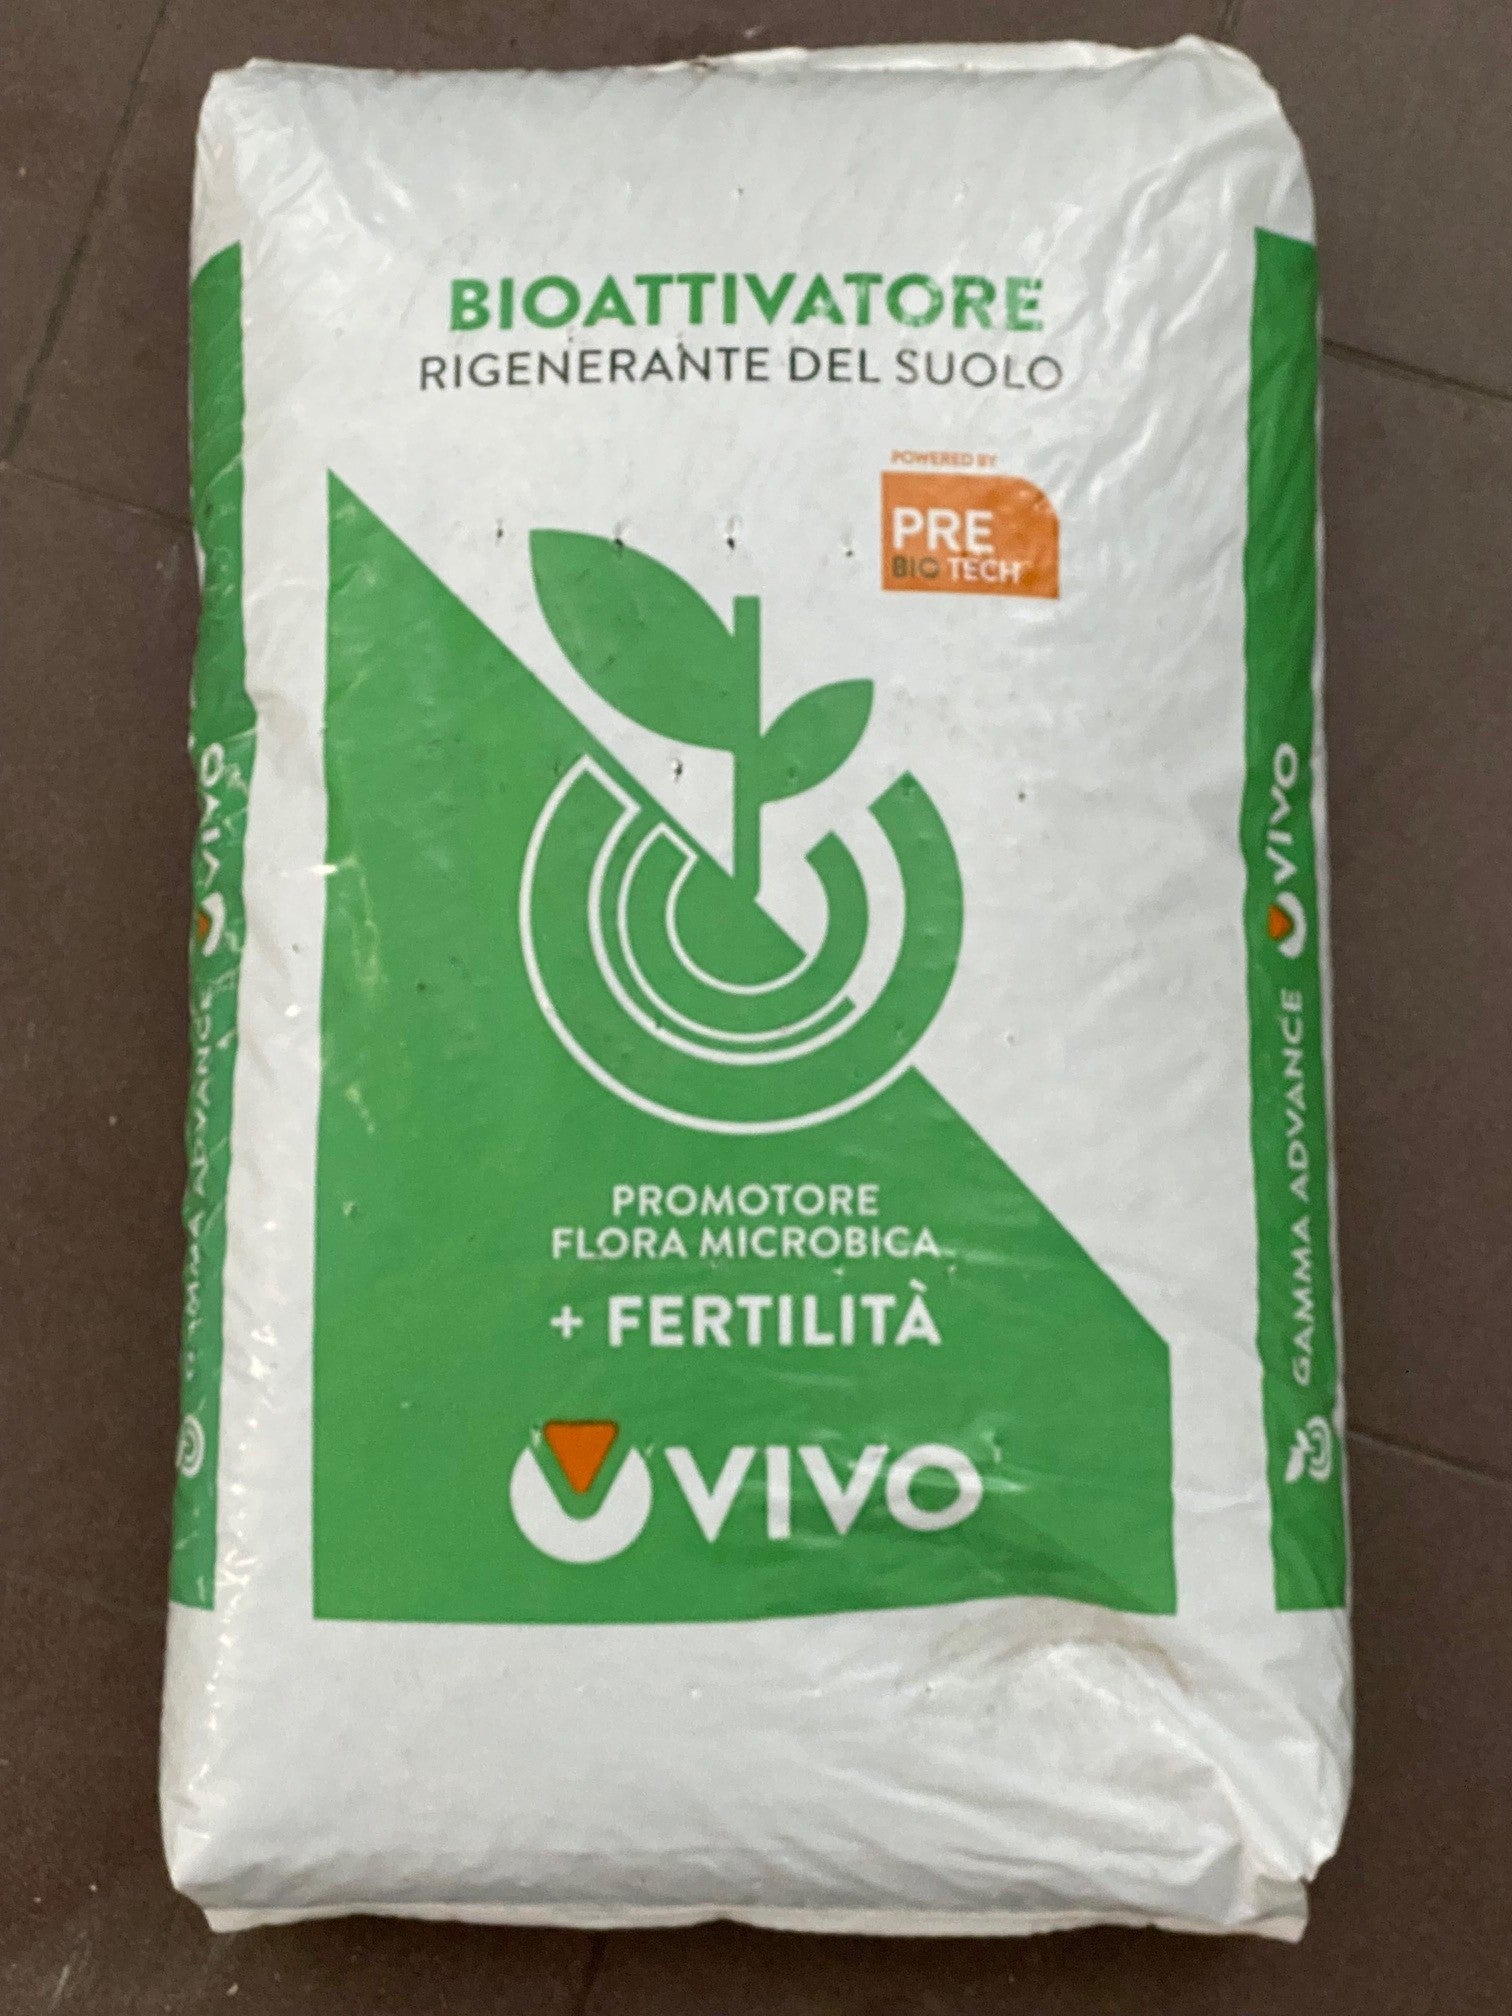 Raiz Max - Rigenerante del suolo con Tricoderma, Micorizze, Rizobatteri e sostanza organica pre-biotica